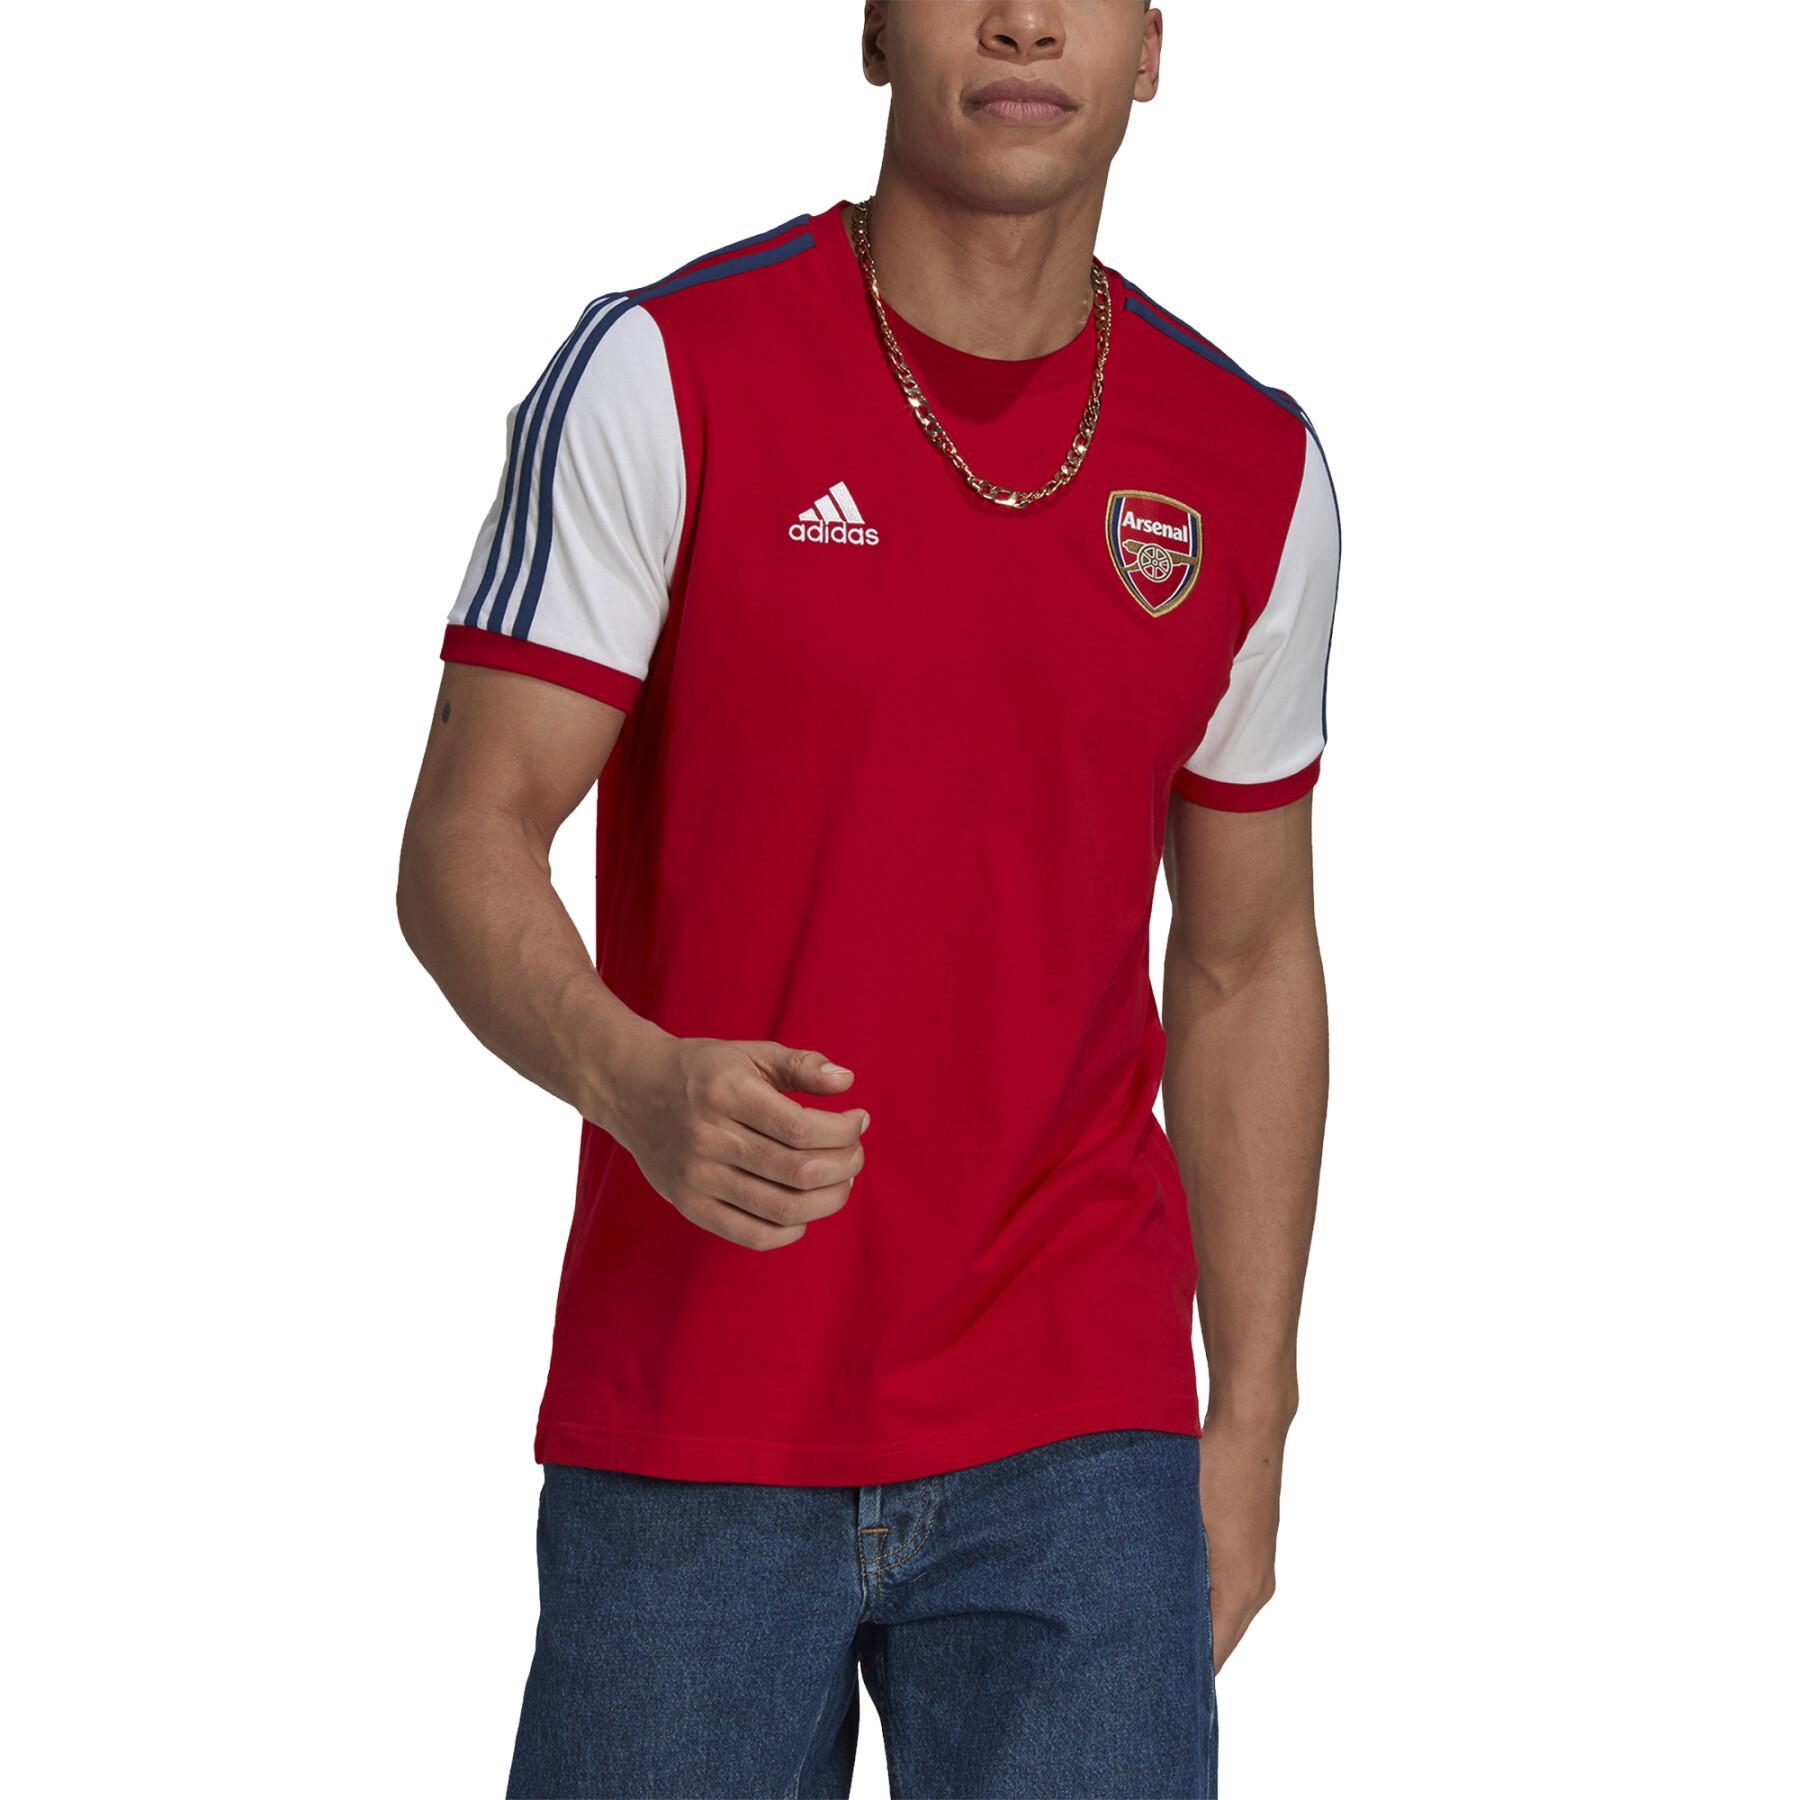 Camiseta Arsenal 3-Stripes